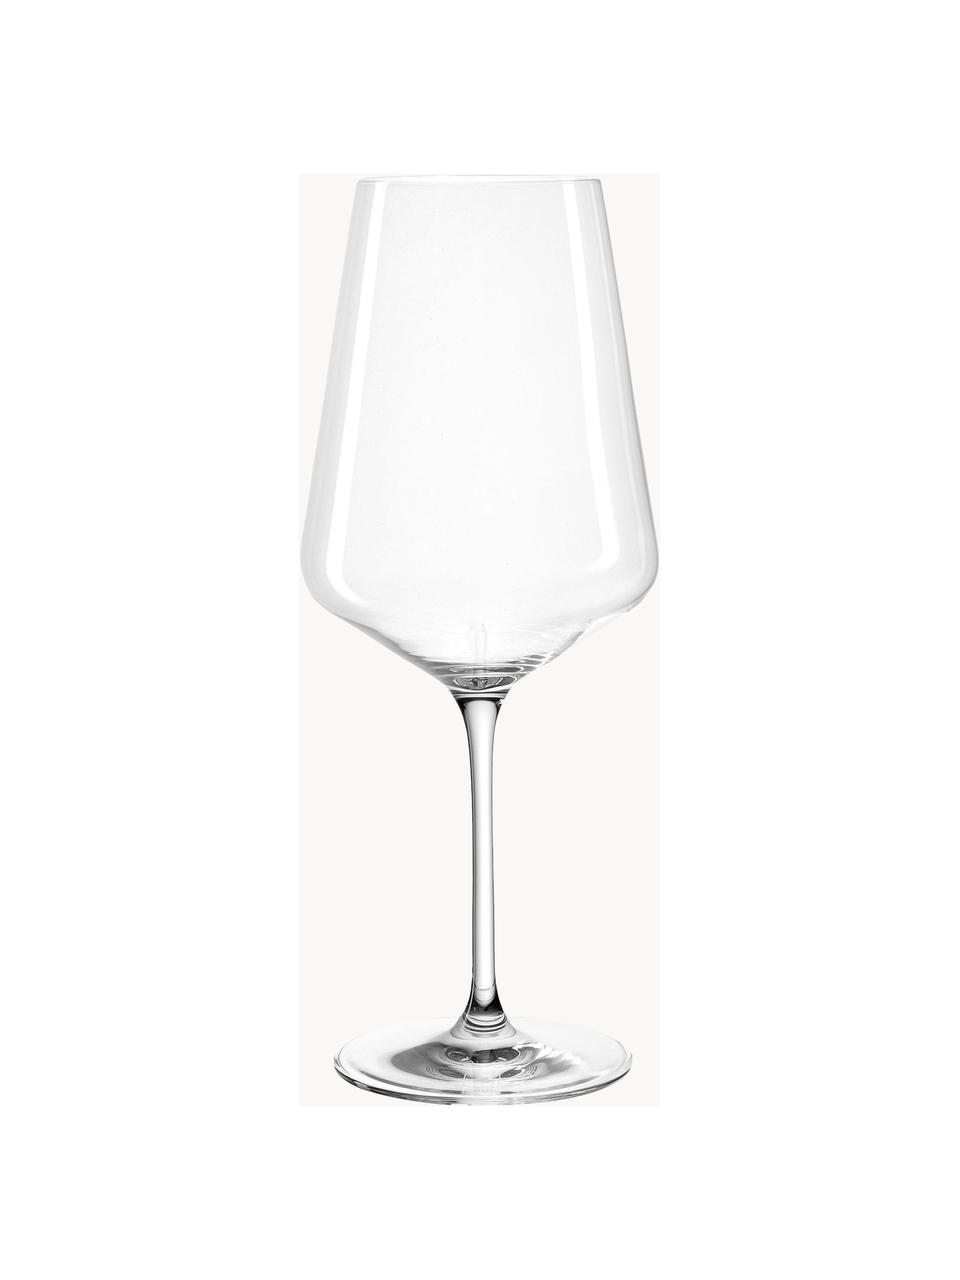 Bicchieri per vino rosso di cristallo Puccini, 6 pz., Vetro di cristallo, Trasparente, Ø 11 x Alt. 26 cm, 750 ml